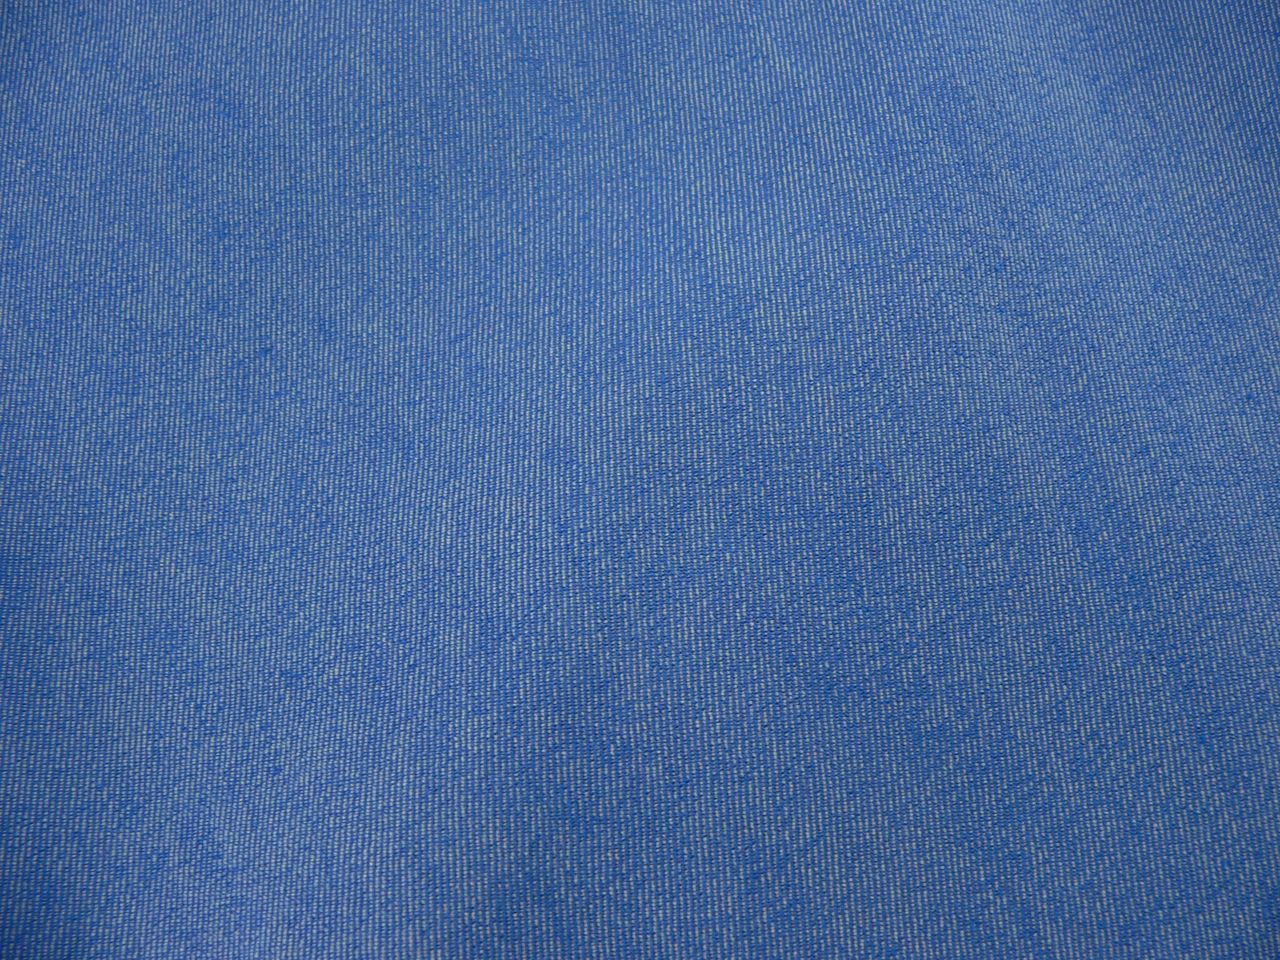 Текстура джинсов. Джинсовая ткань. Фактура джинсовой ткани. Текстура джинсовой ткани. Синяя ткань.